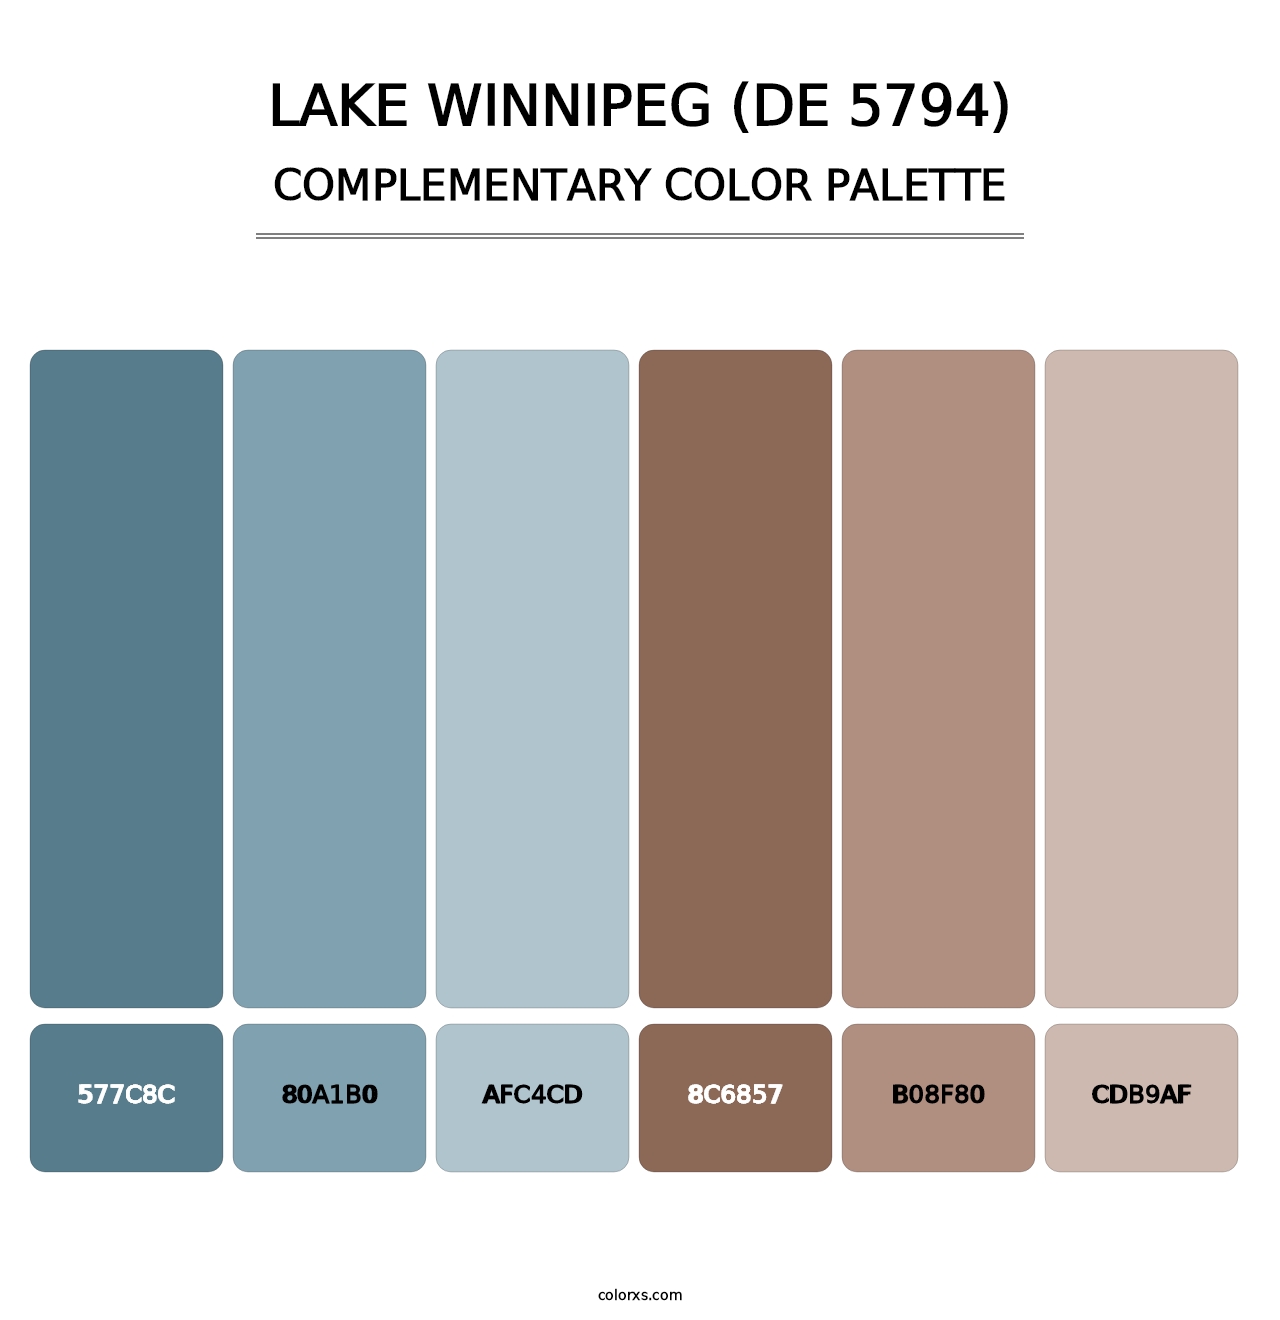 Lake Winnipeg (DE 5794) - Complementary Color Palette